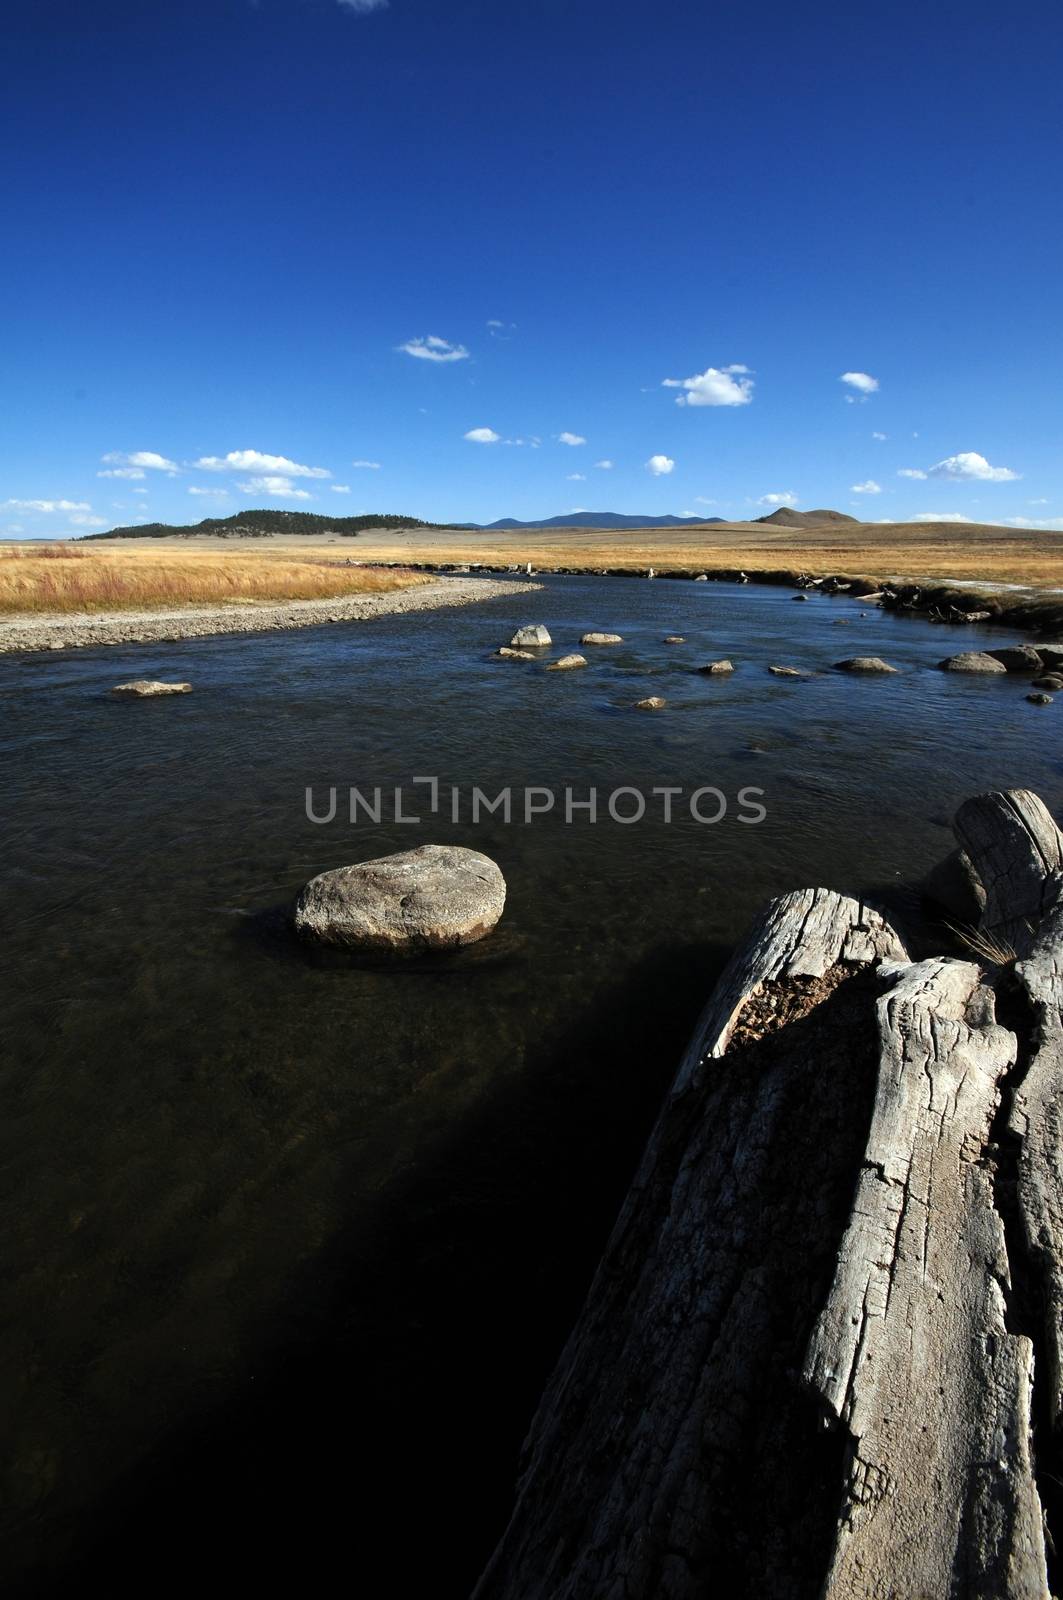 South Platte River. Colorado Plains. Portrait Photo